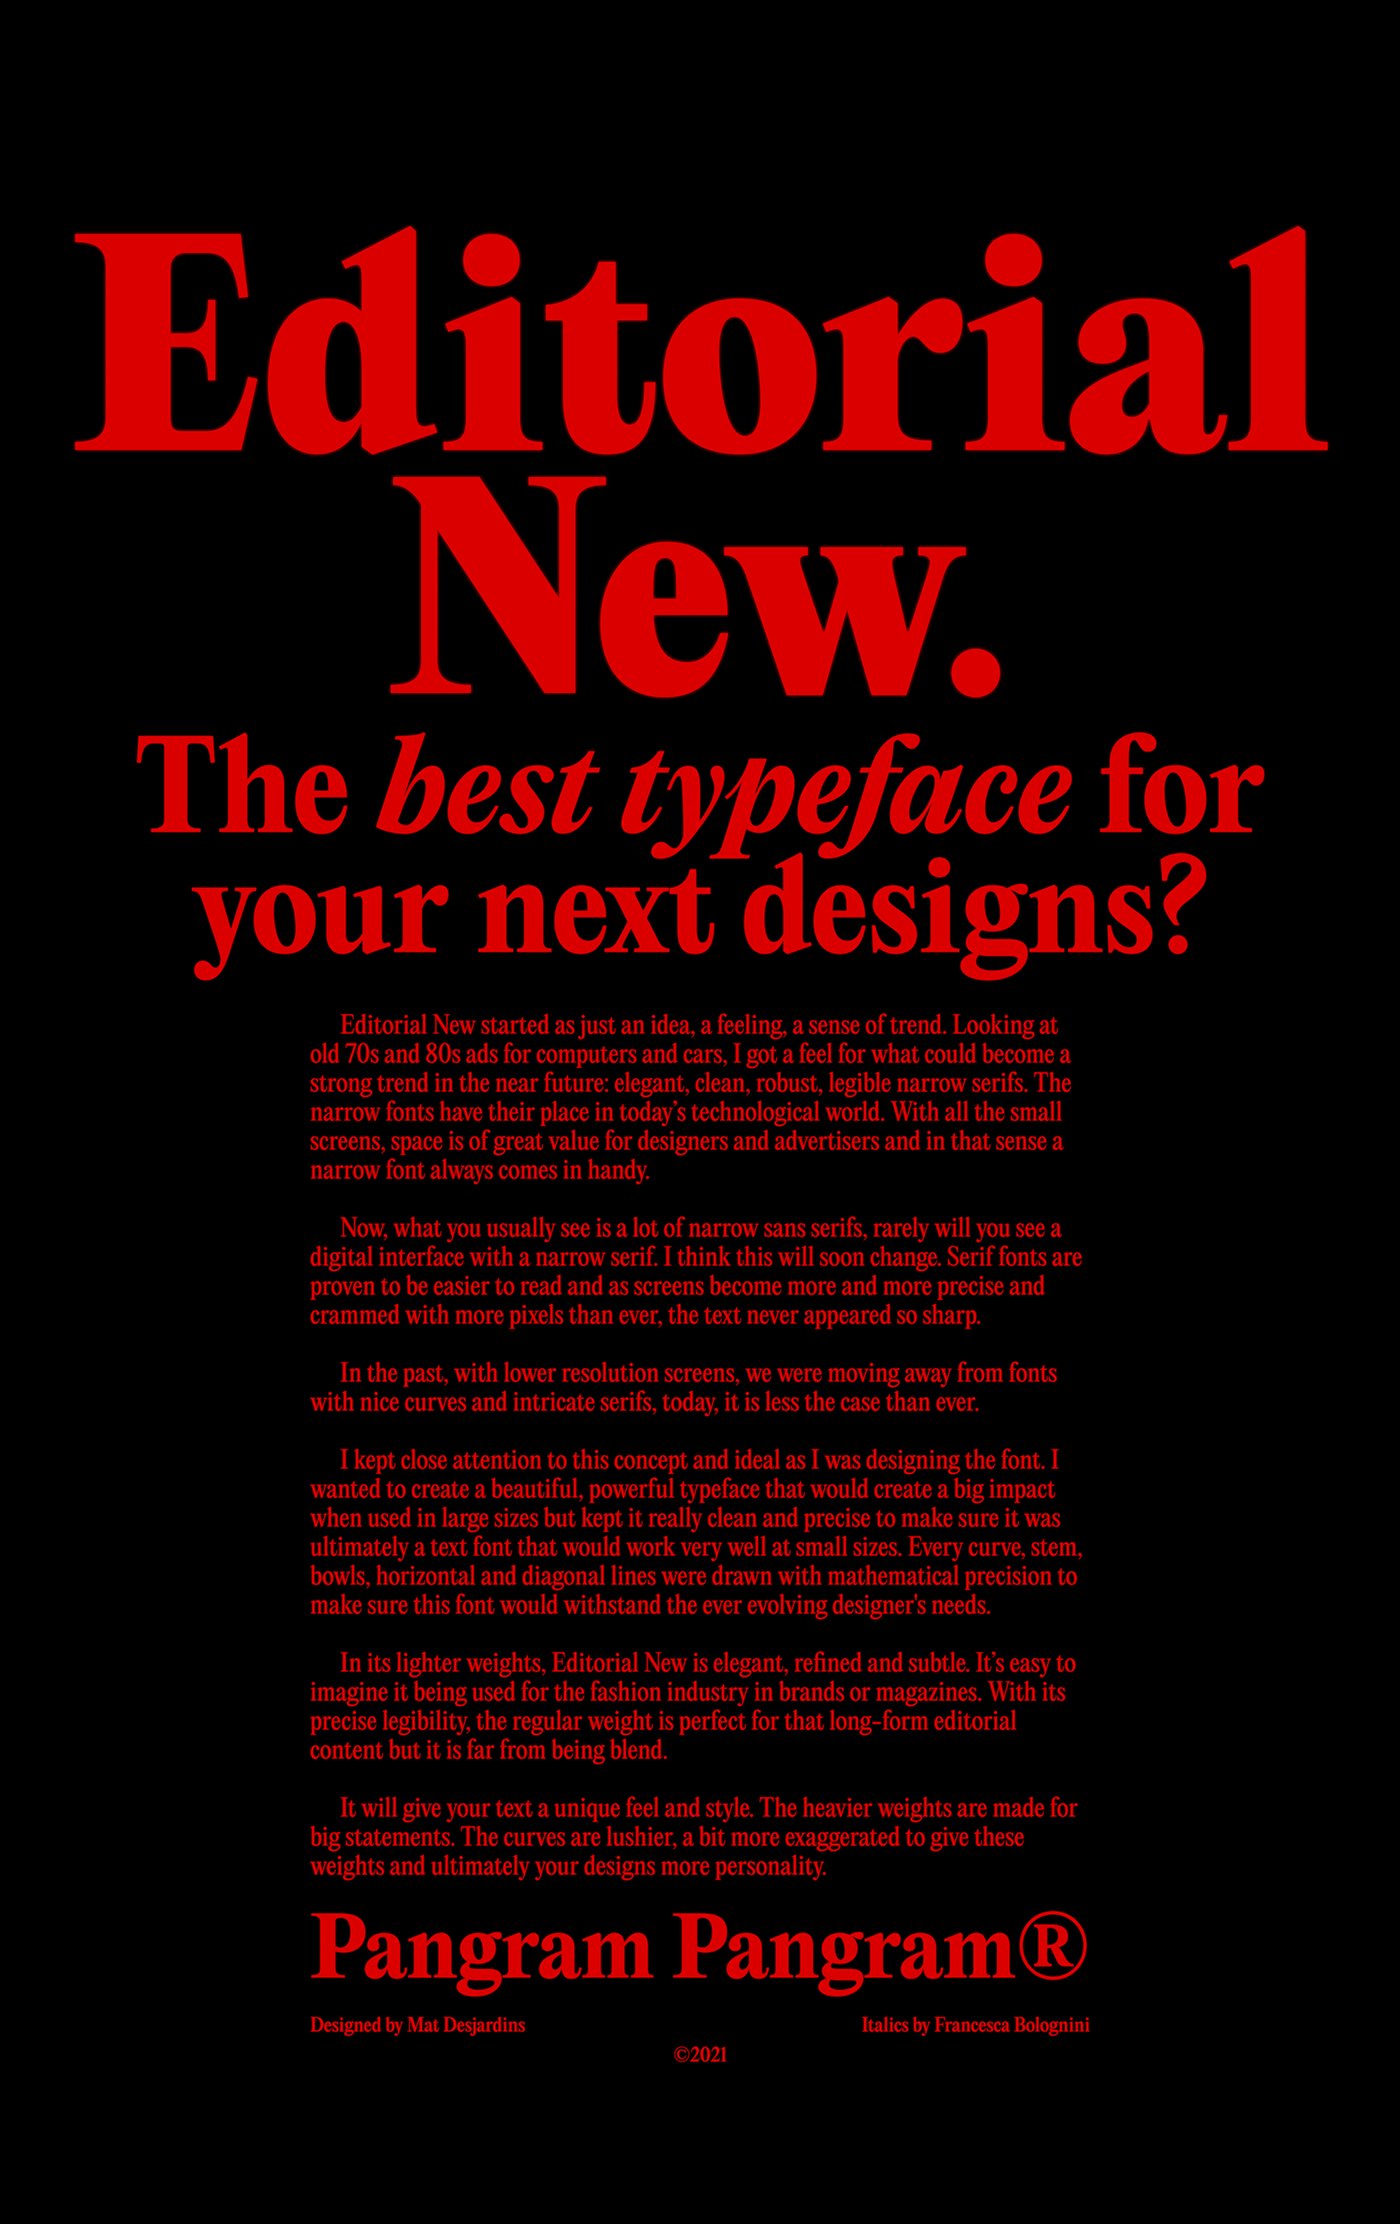 font free Free font free serif free type quality font serif Serif Font type typefaces